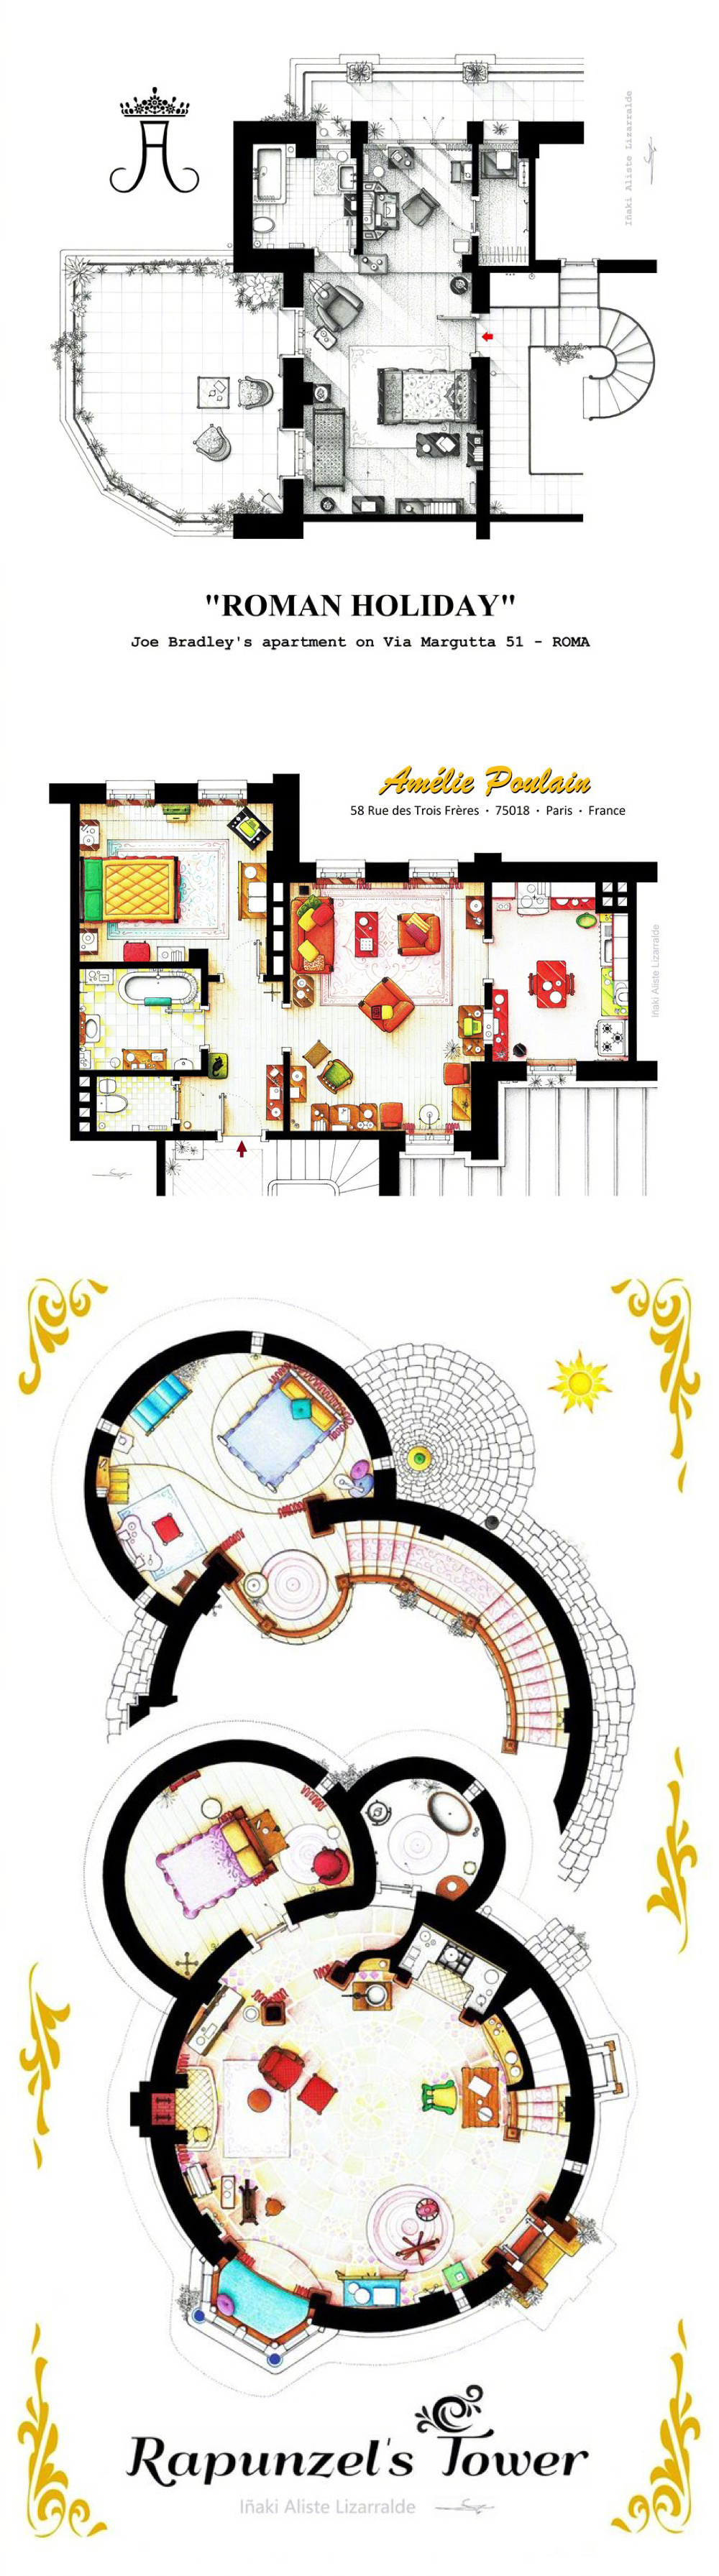 西班牙设计师Iñaki Aliste Lizarralde复原的经典影视剧公寓/房间室内结构图